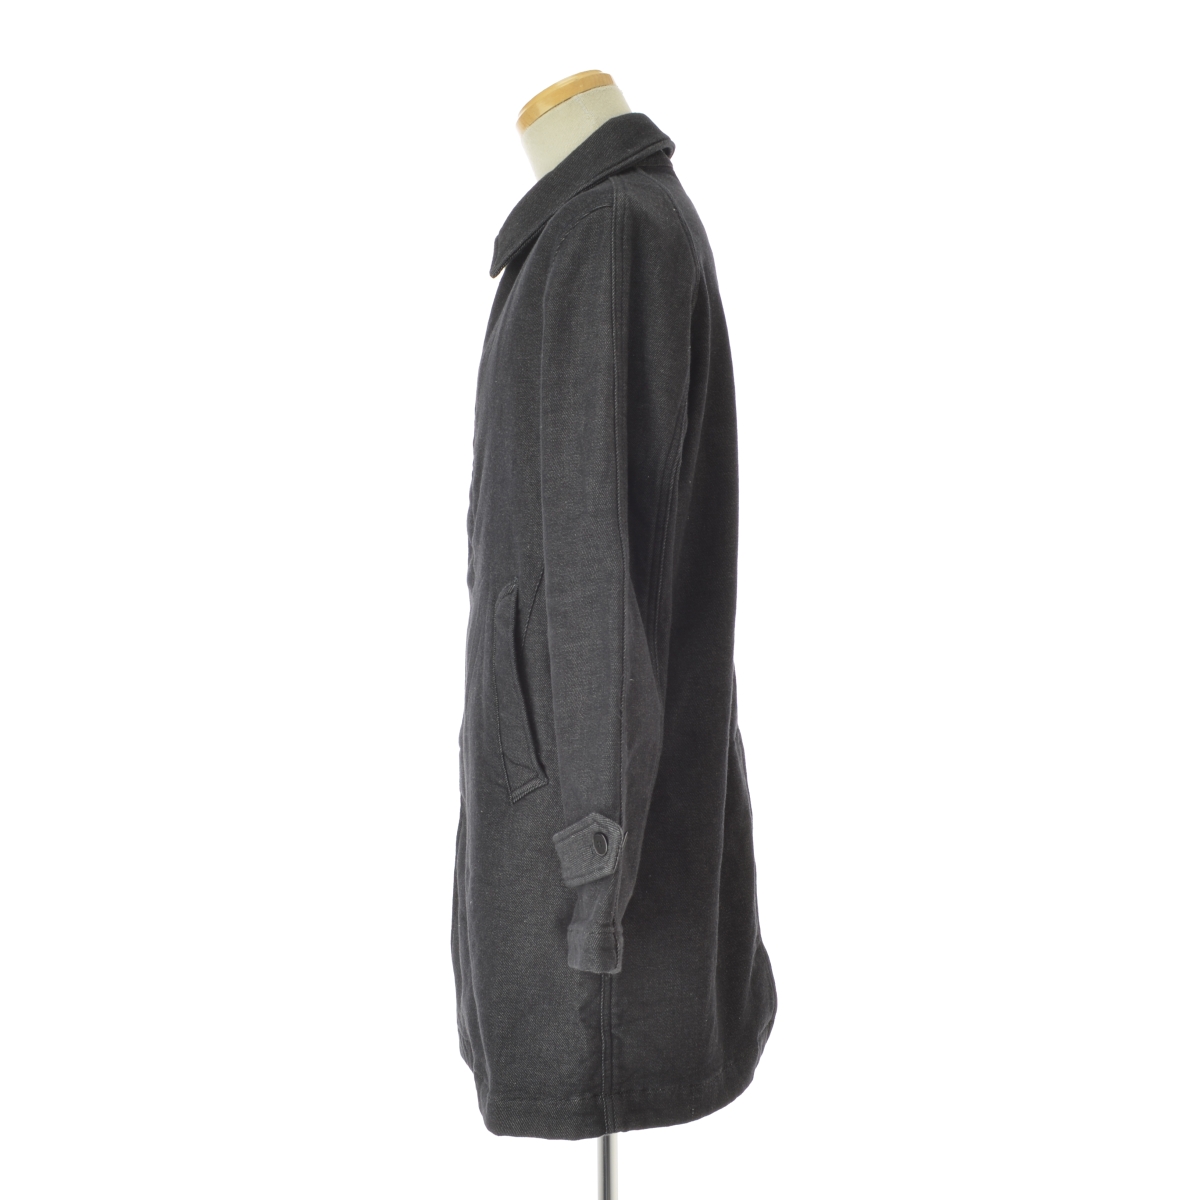 FOB FACTORY / エフオービーファクトリー F2326 デニム2重織 トレンチ コート -ブランド古着の買取販売カンフル